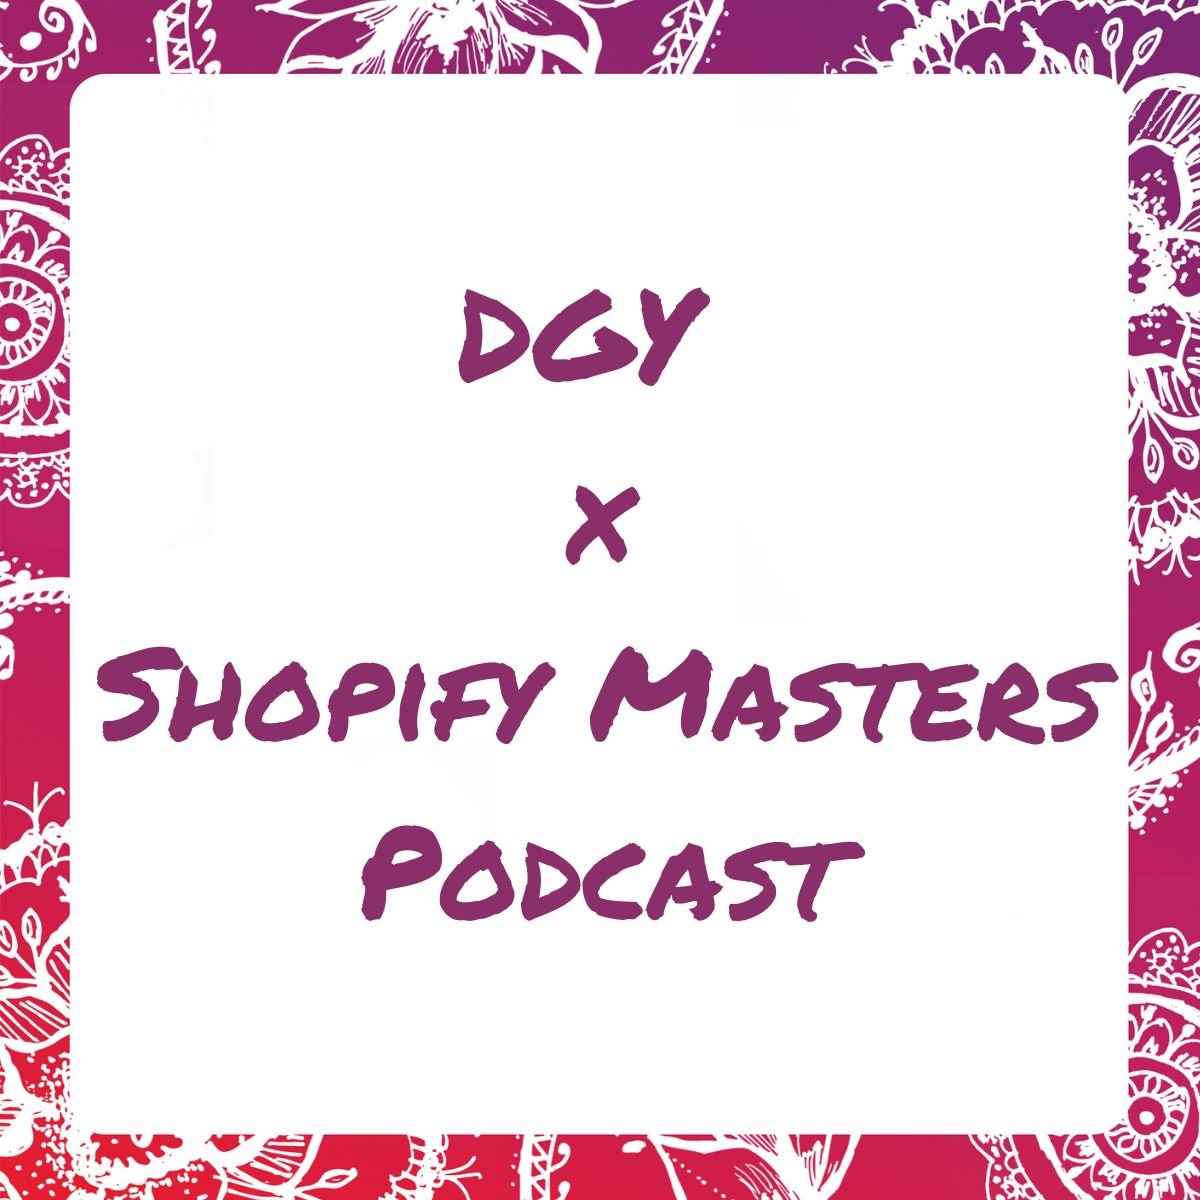 Darn Good Yarn Business Growth Secrets on Shopify Masters Podcast! - Darn Good Yarn